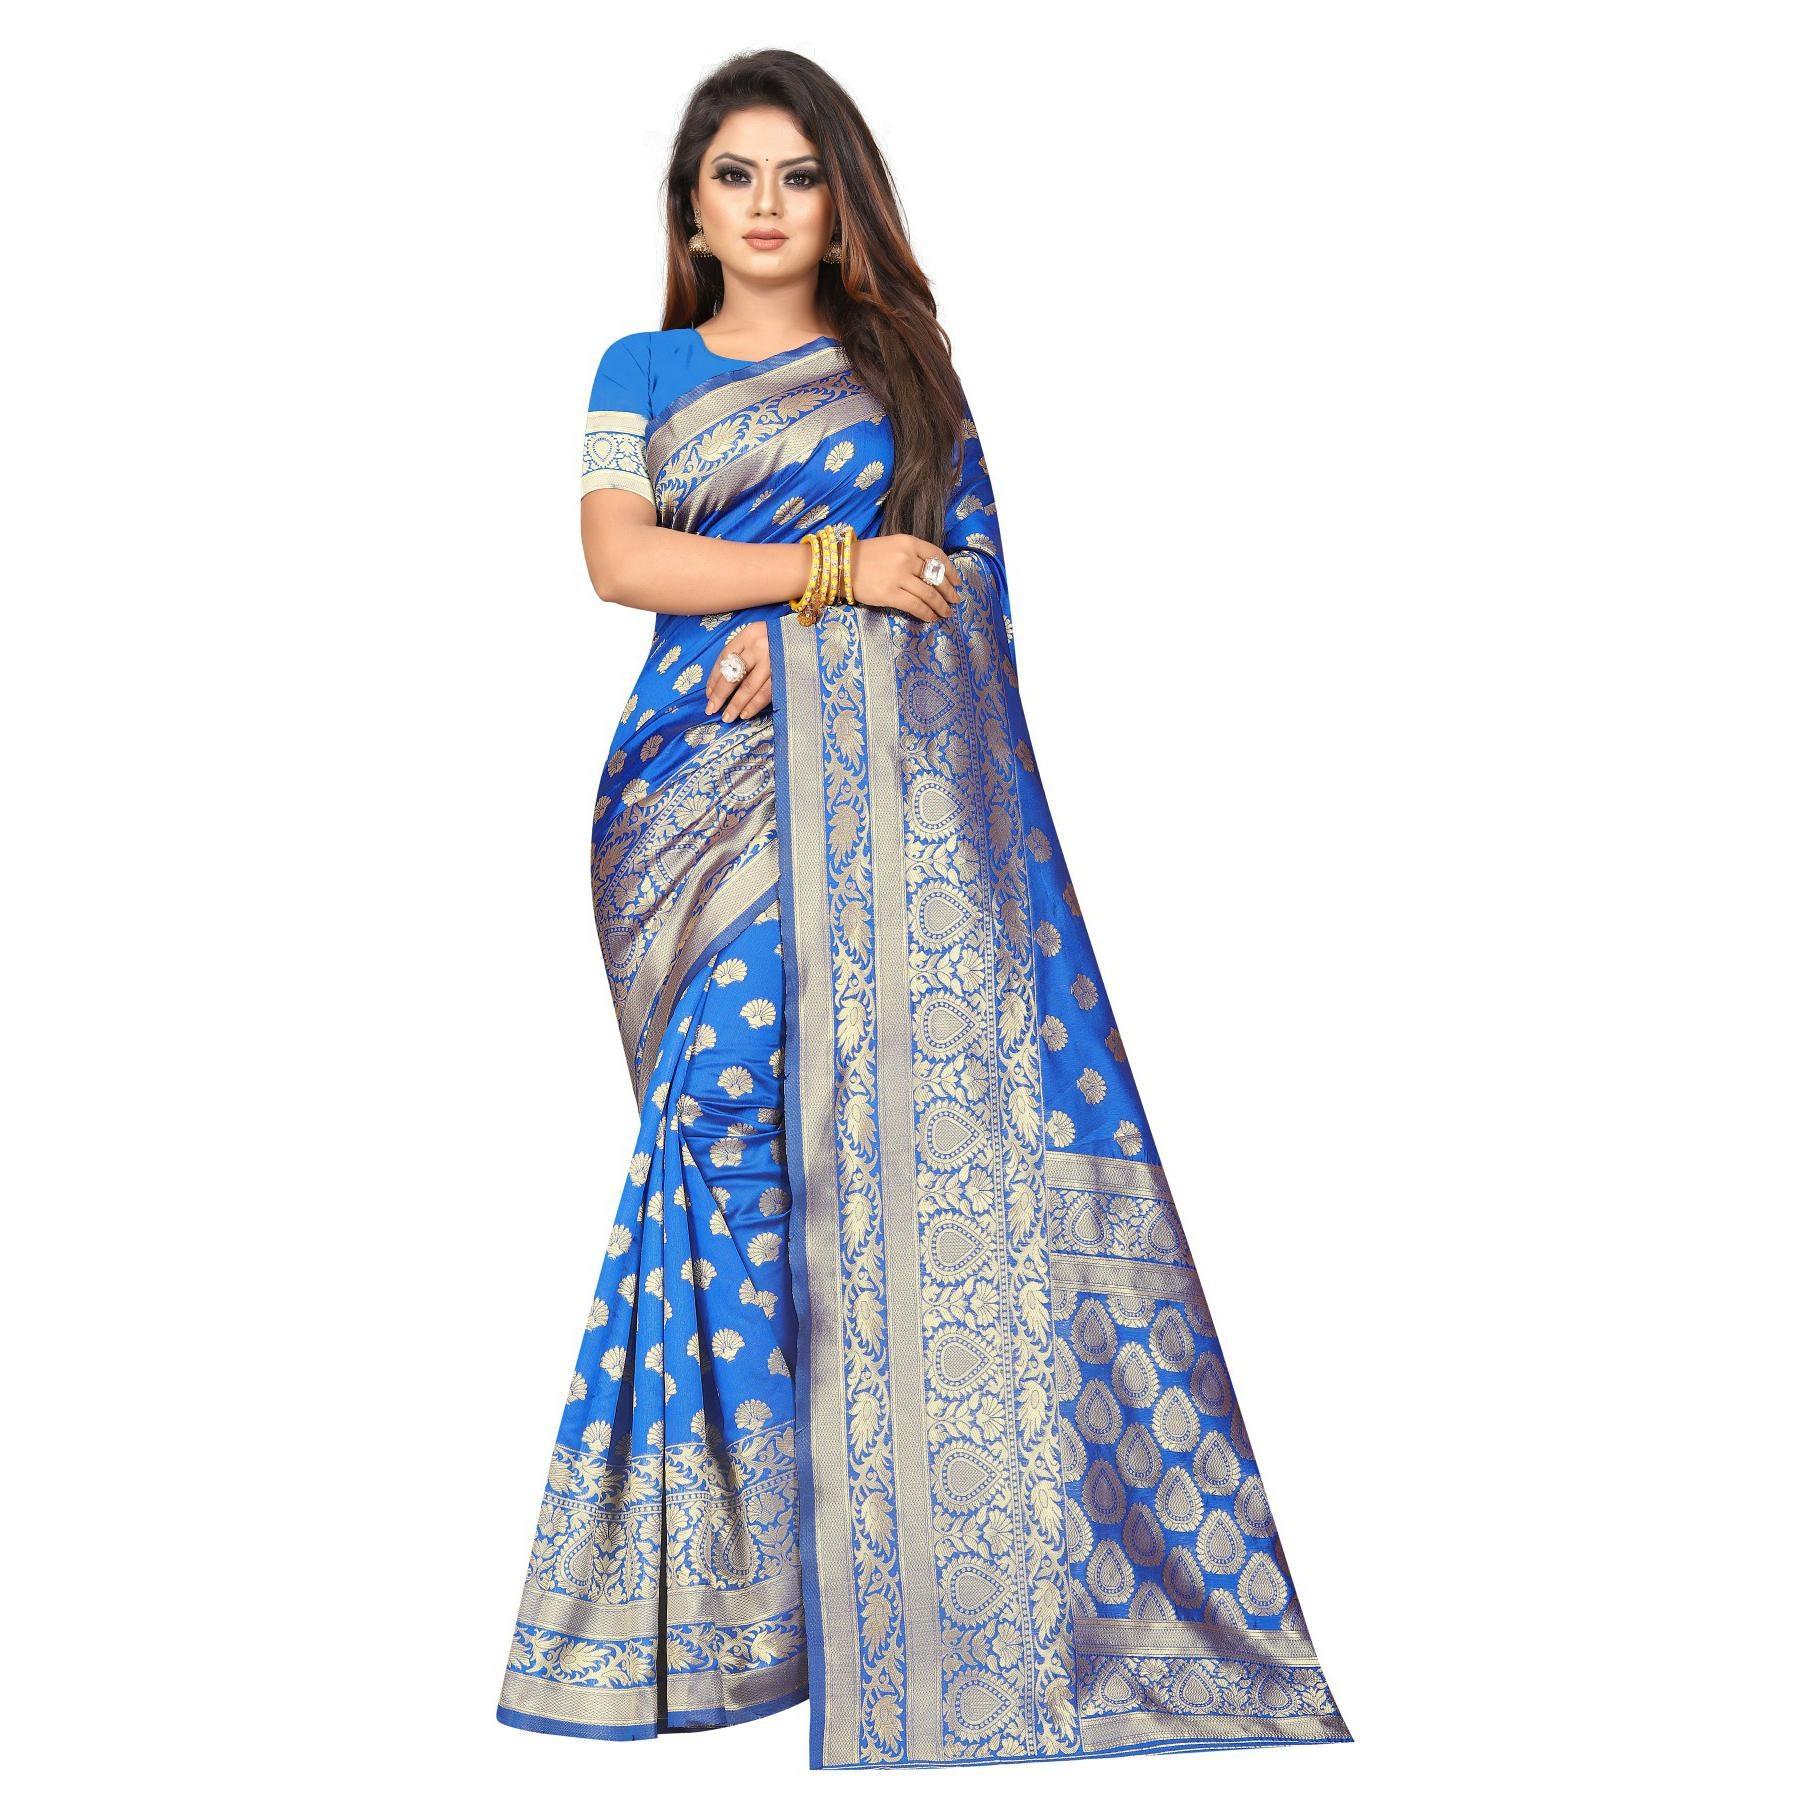 Breathtaking Blue Colored Festive Wear Woven Lichi Silk Saree - Peachmode